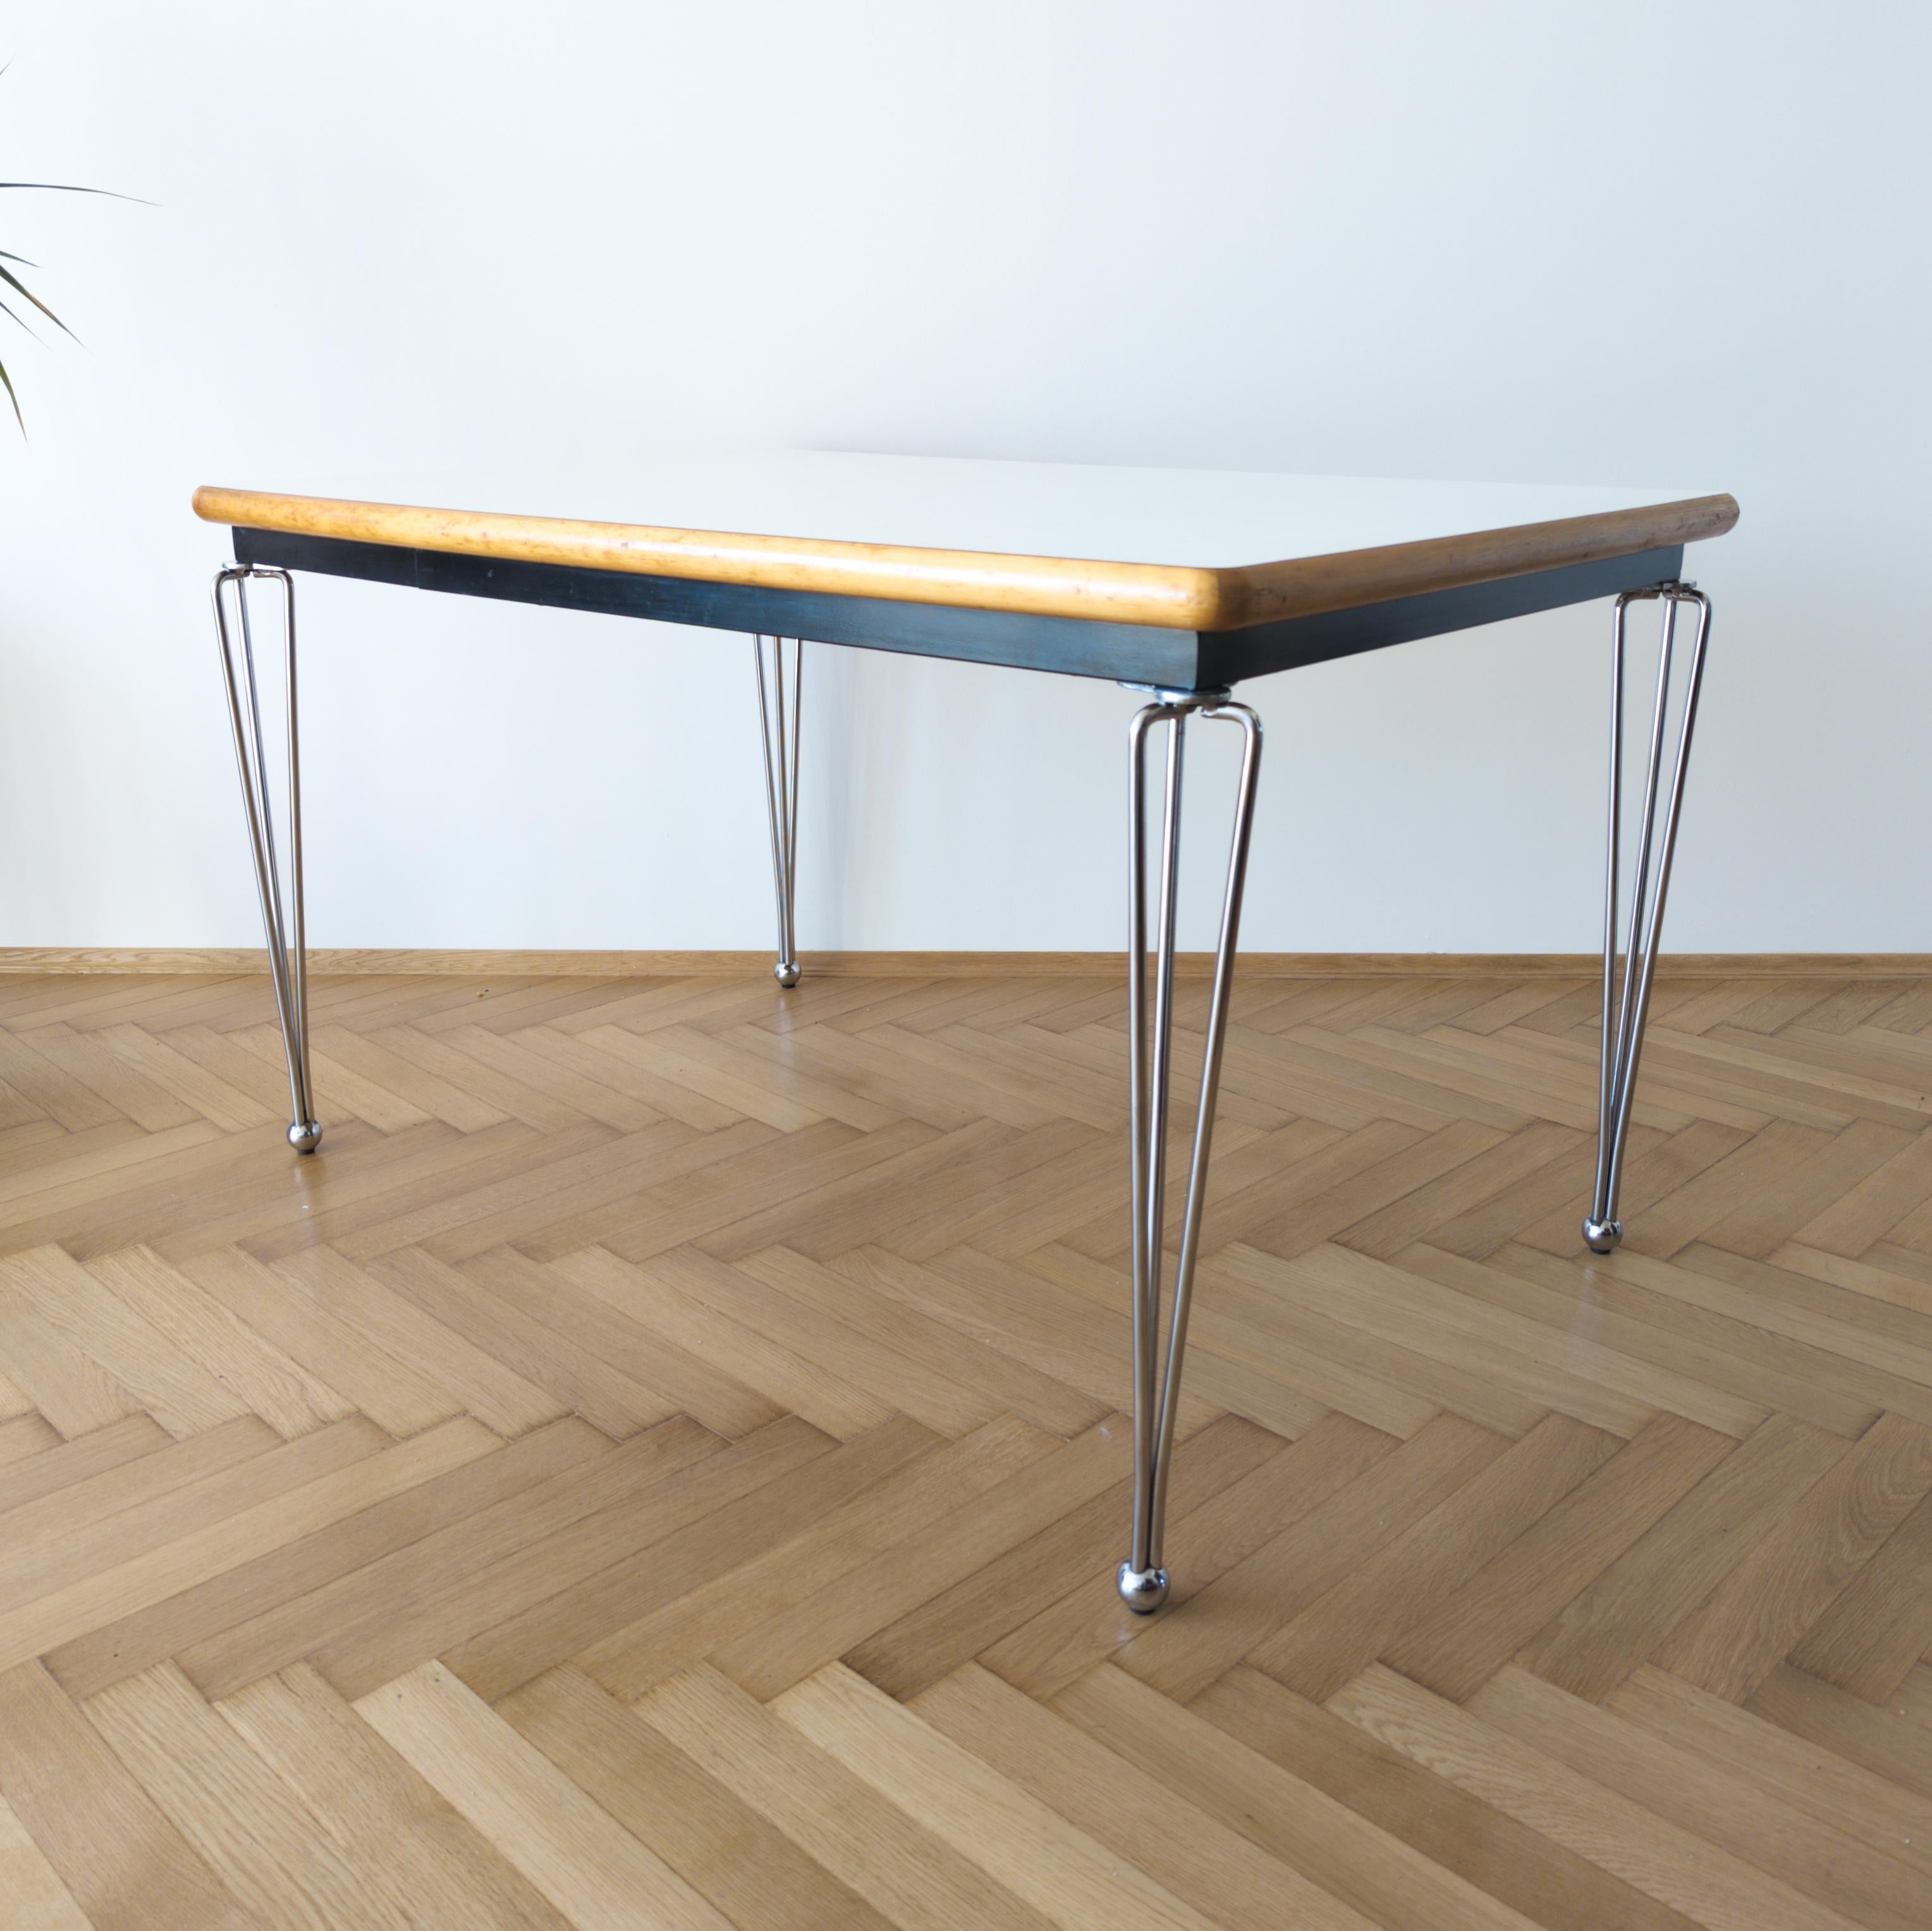 Table de salle à manger robuste de haute qualité, conçue par l'architecte néerlandais Marius van den Wildenberg pour Thonet en 1988. Fabriqué en bois massif et en acier tubulaire chromé. Plateau en stratifié blanc. En très bon état avec de légères